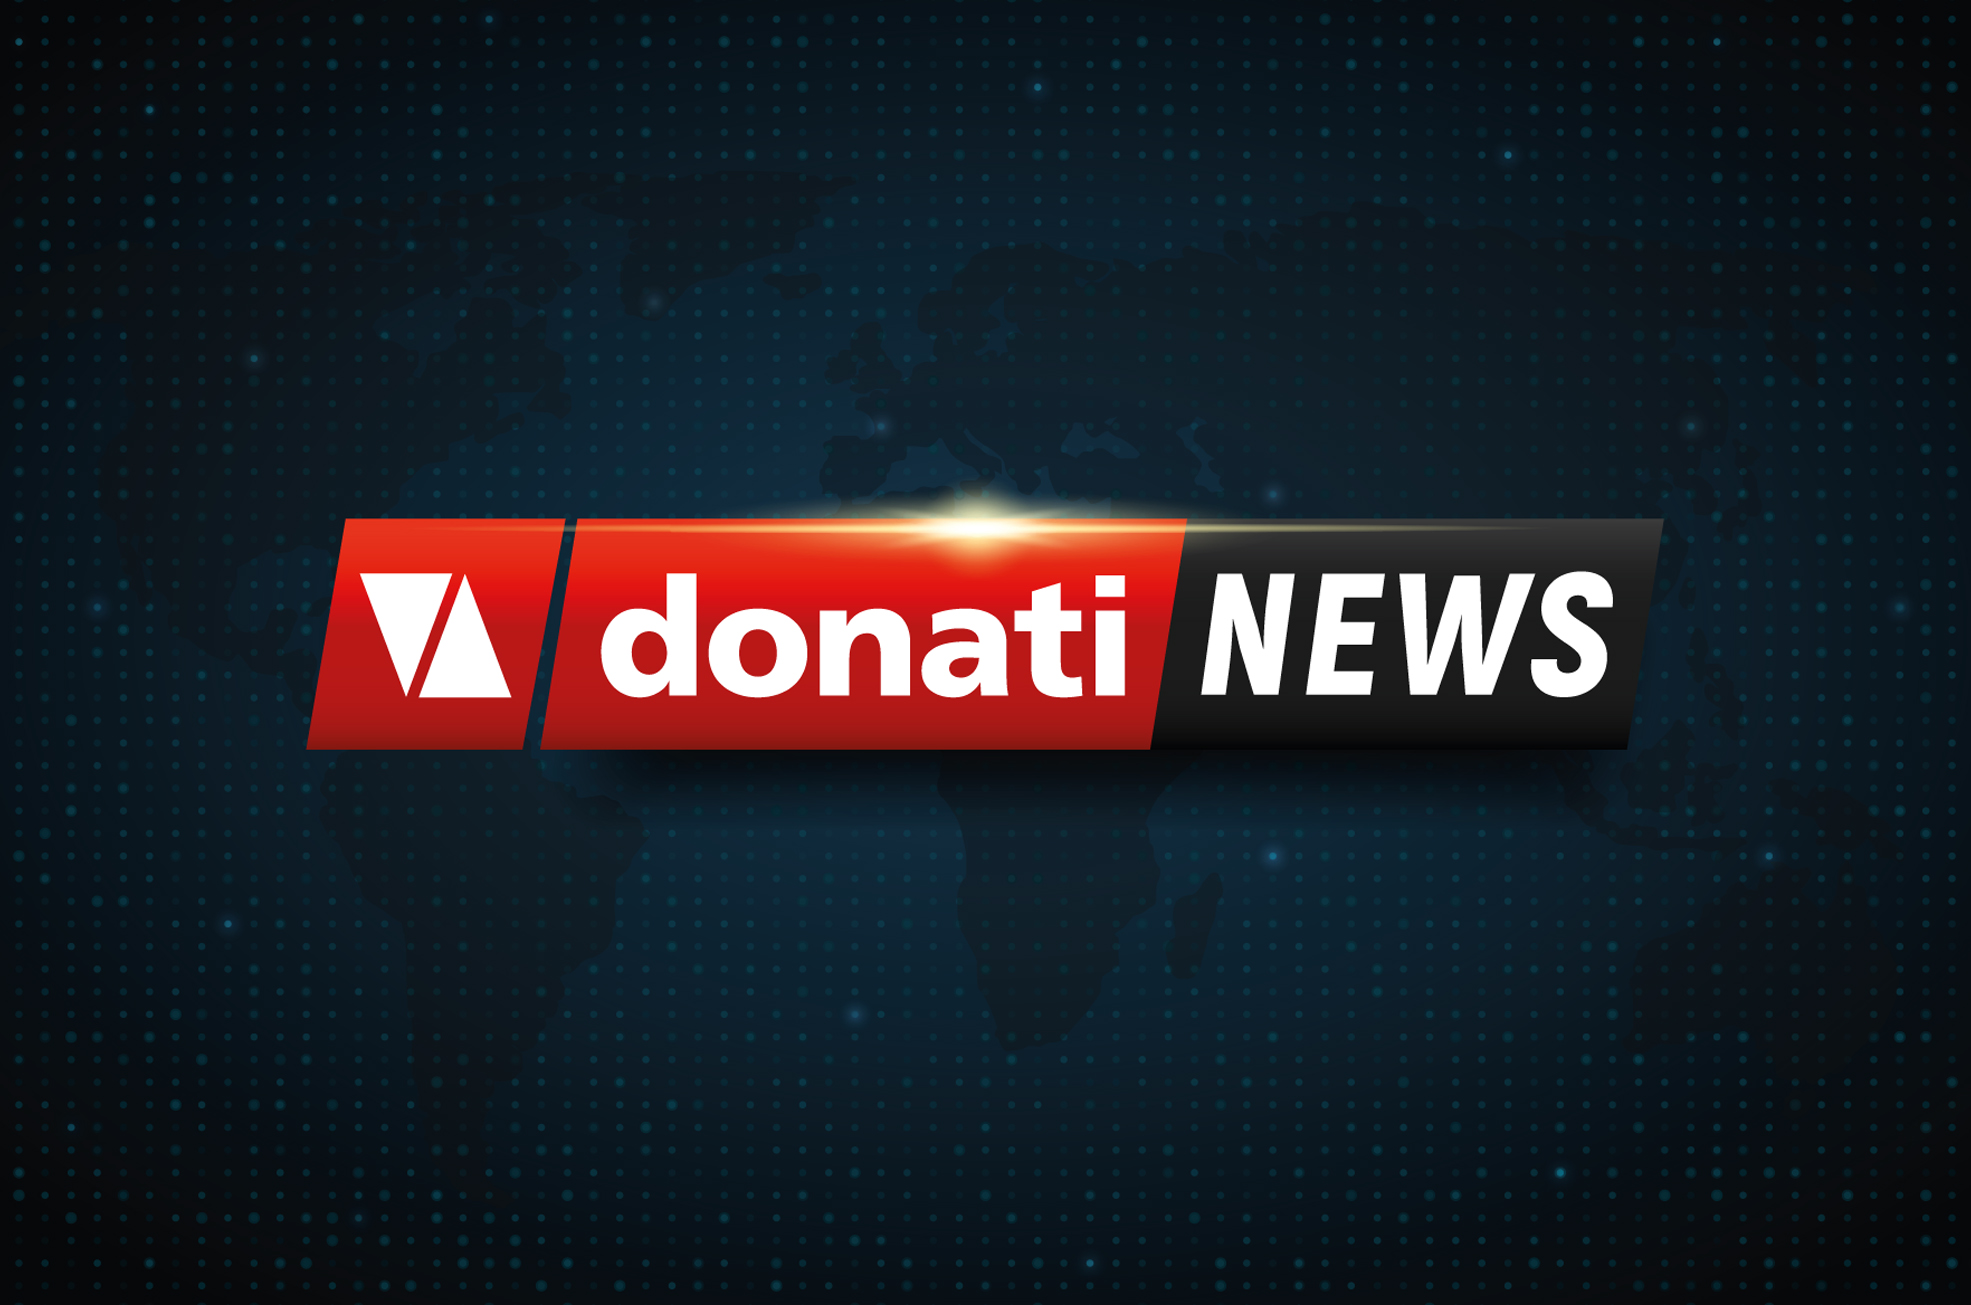 Donati News